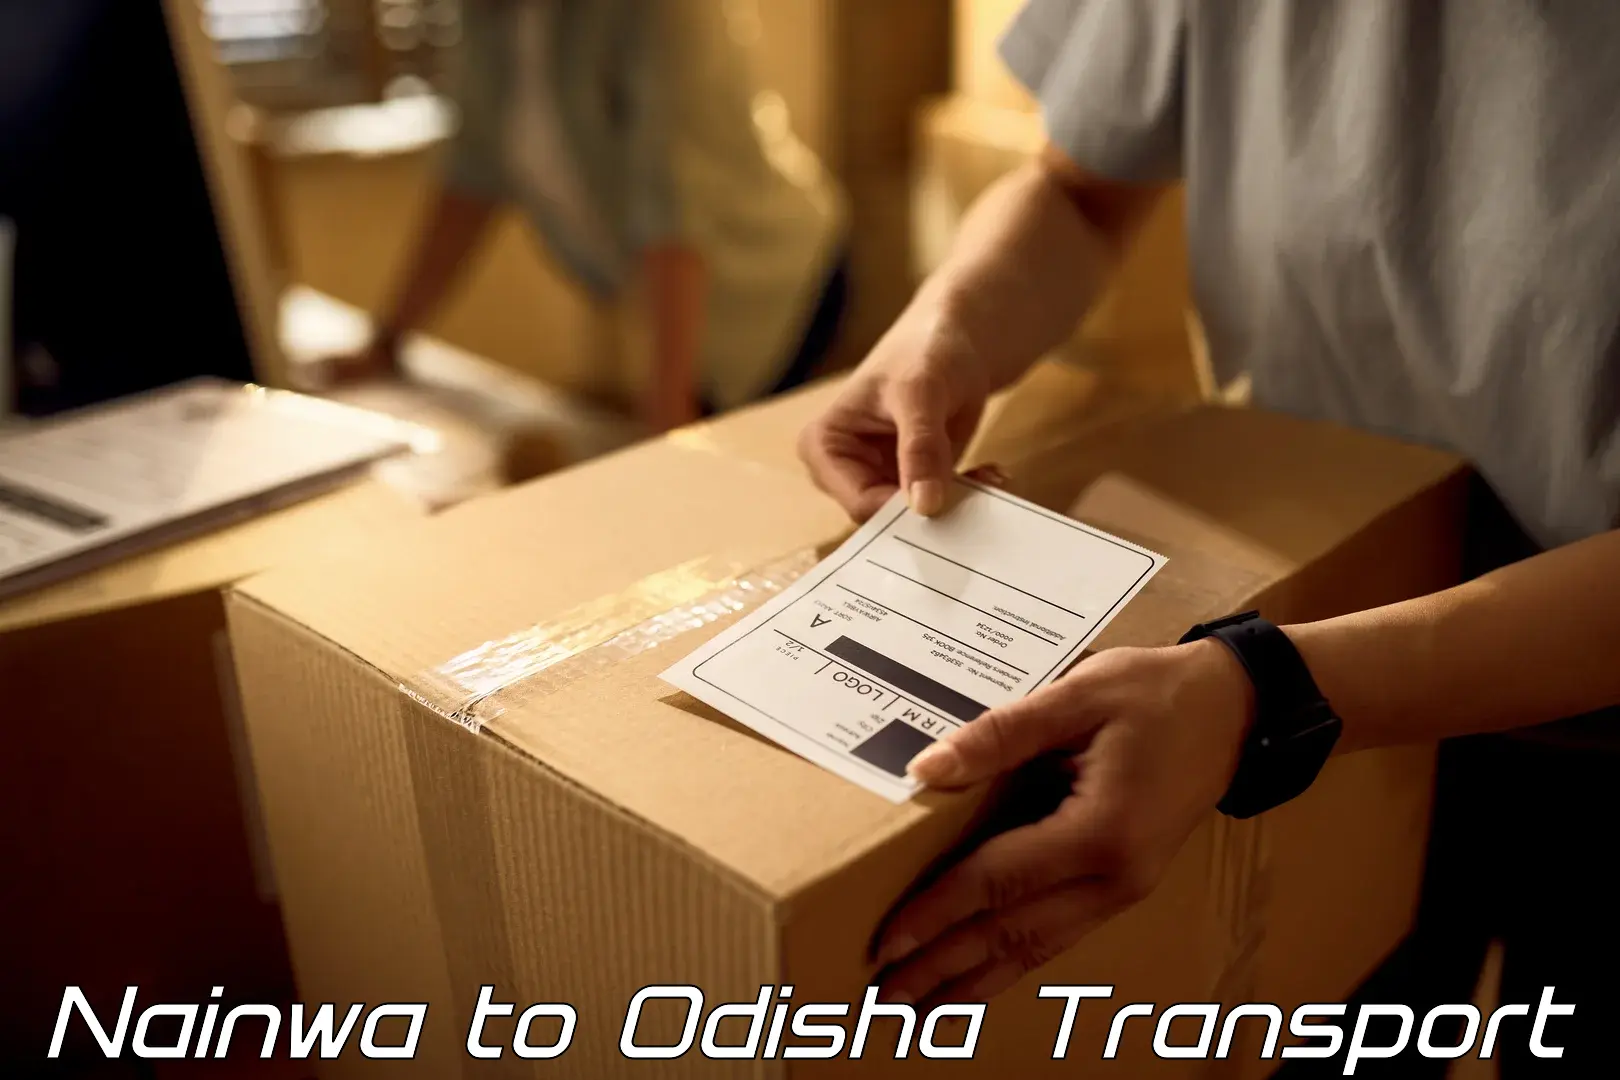 Delivery service Nainwa to Dhamanagar